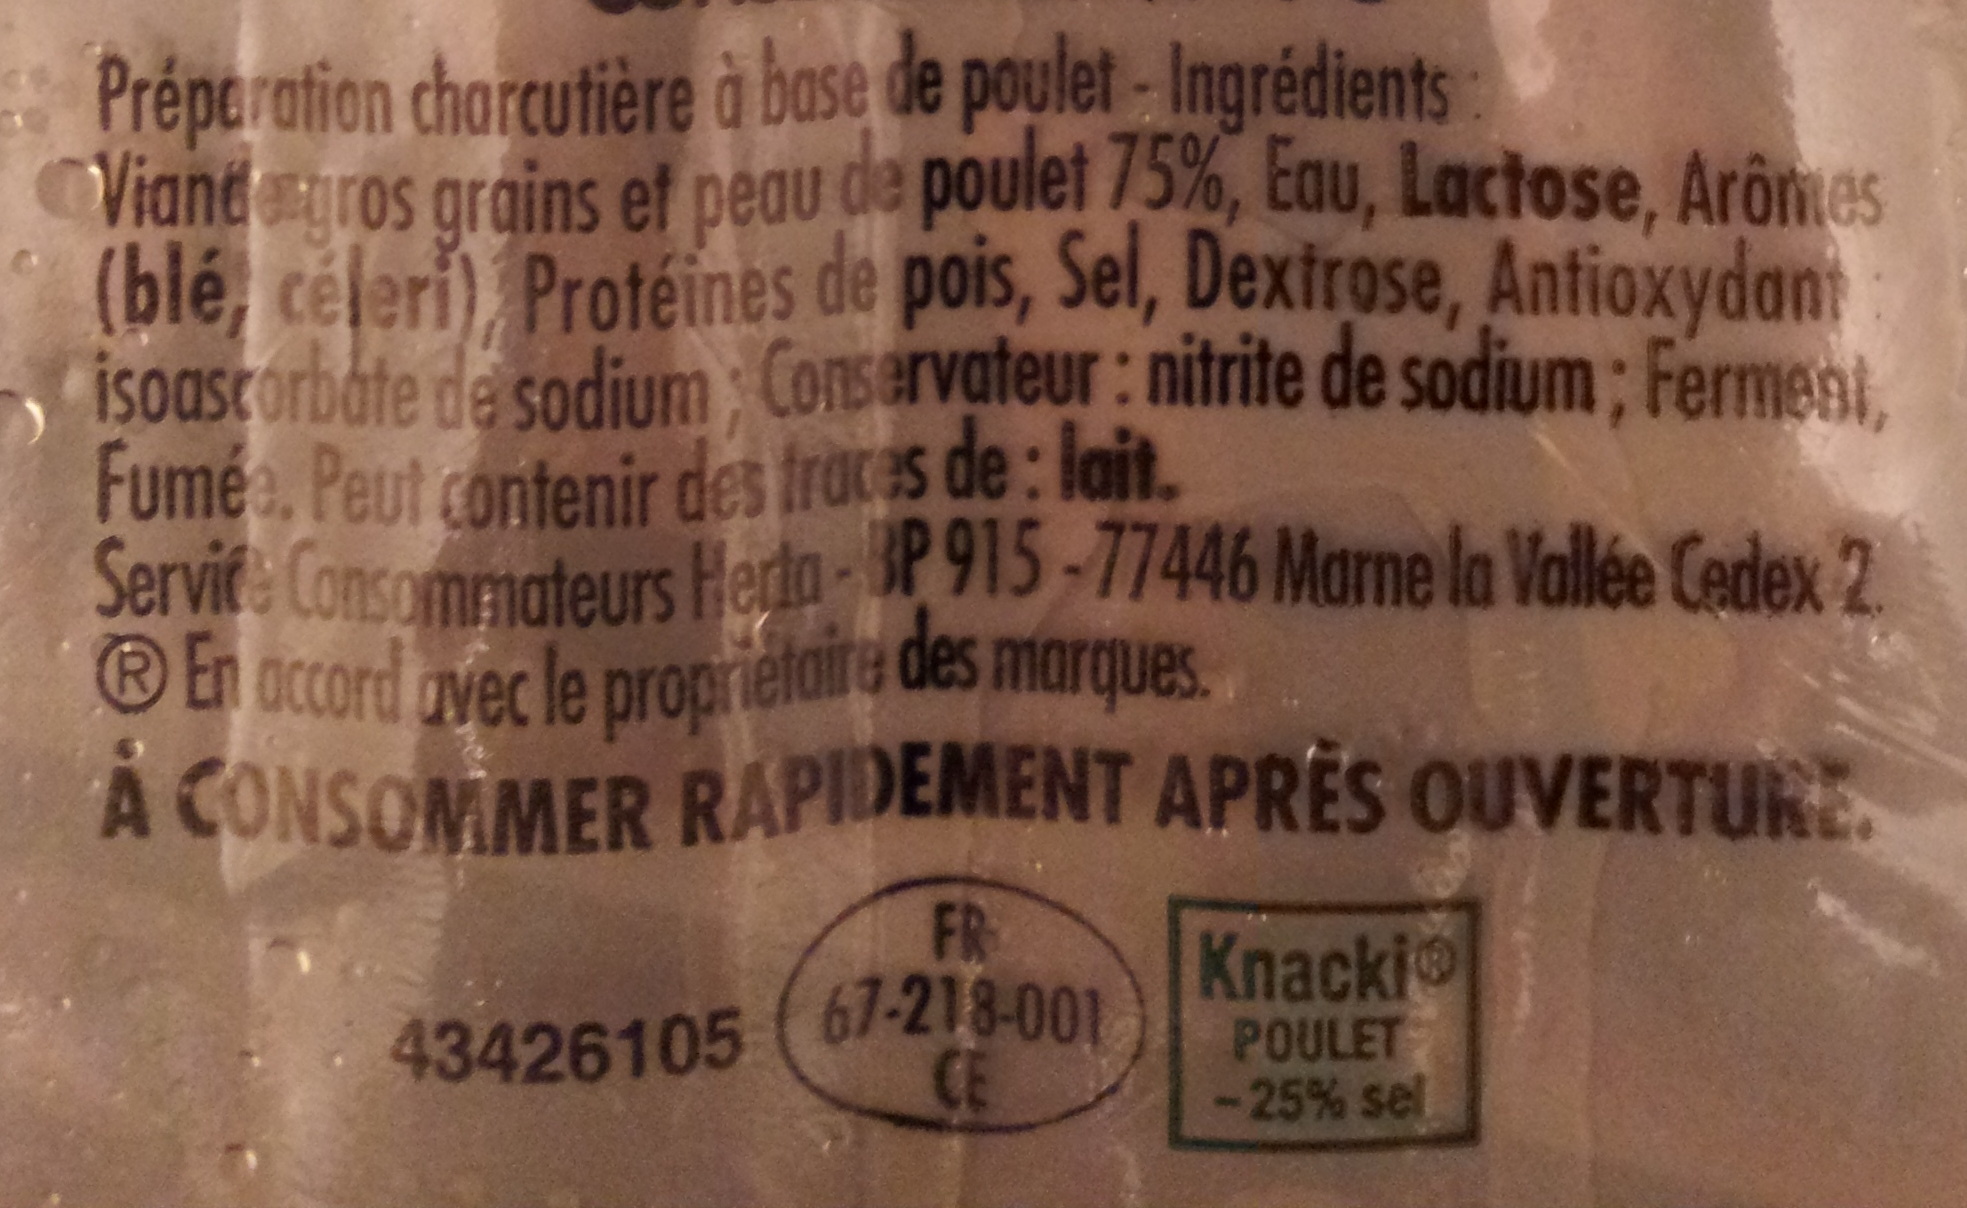 Knacki 100 % Poulet - Ingredients - fr